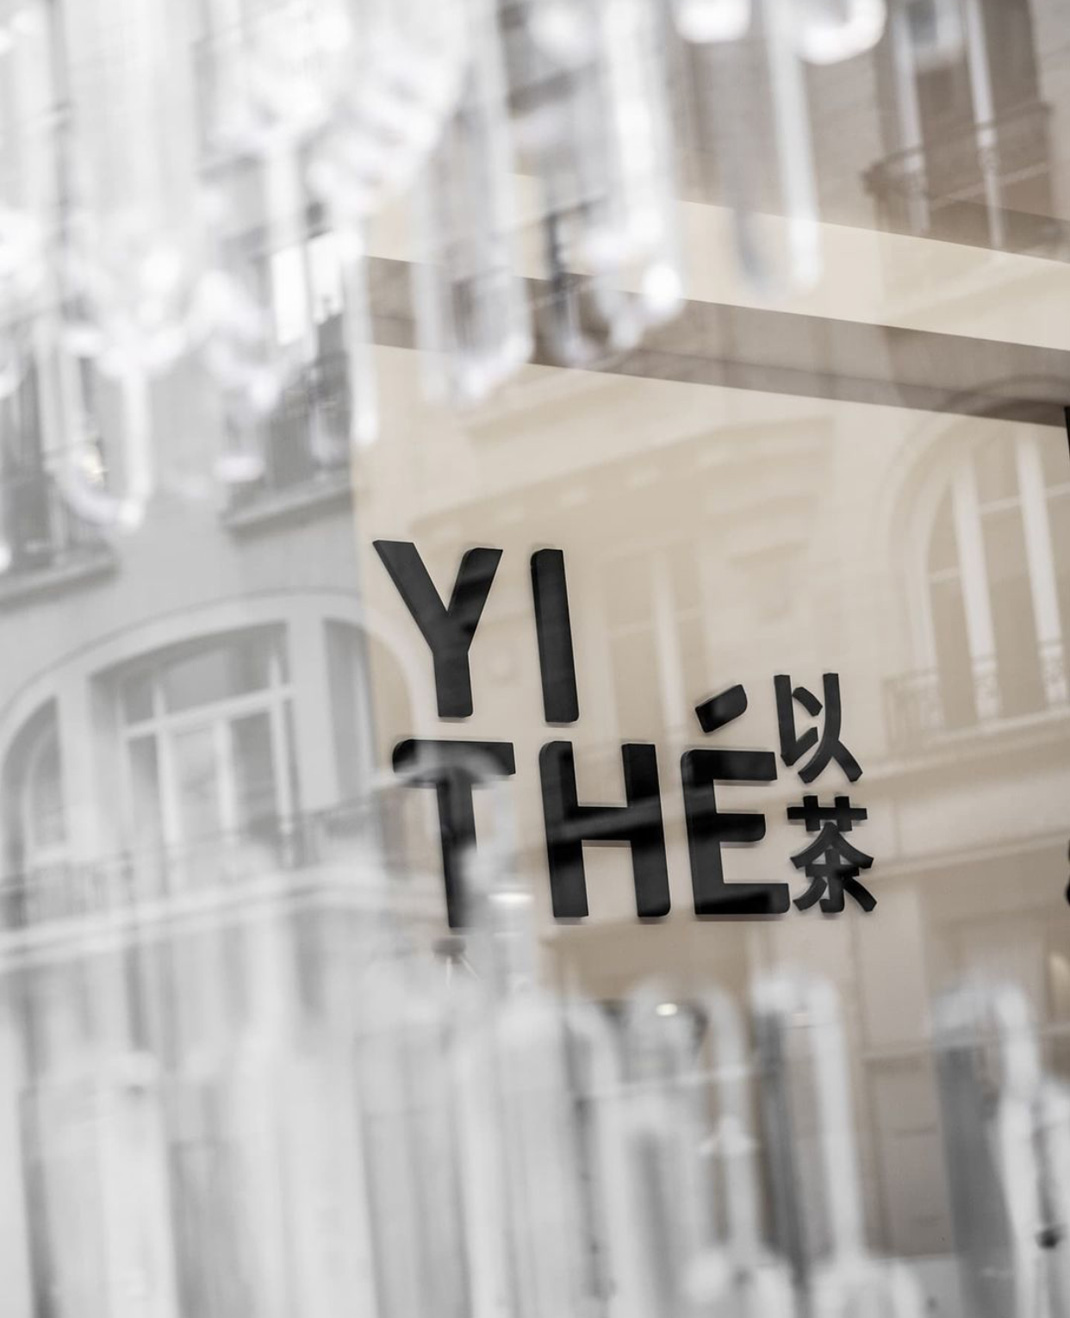 奶茶店YITHE 法国 巴黎 奶茶店 字体设计 logo设计 vi设计 空间设计